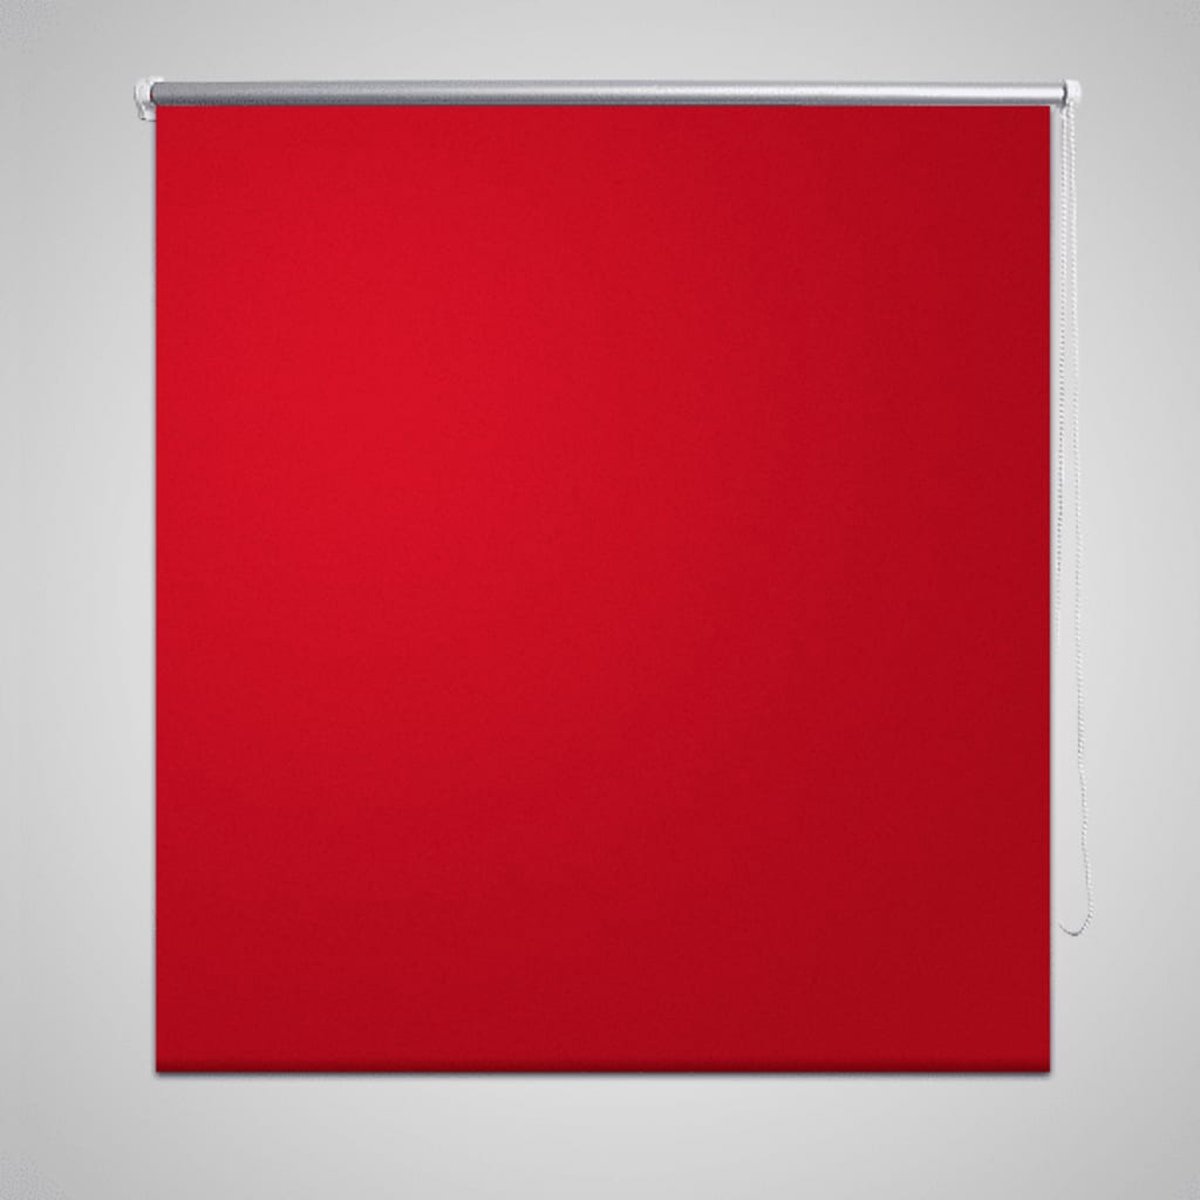 VidaLife Rolgordijn verduisterend 100 x 175 cm rood